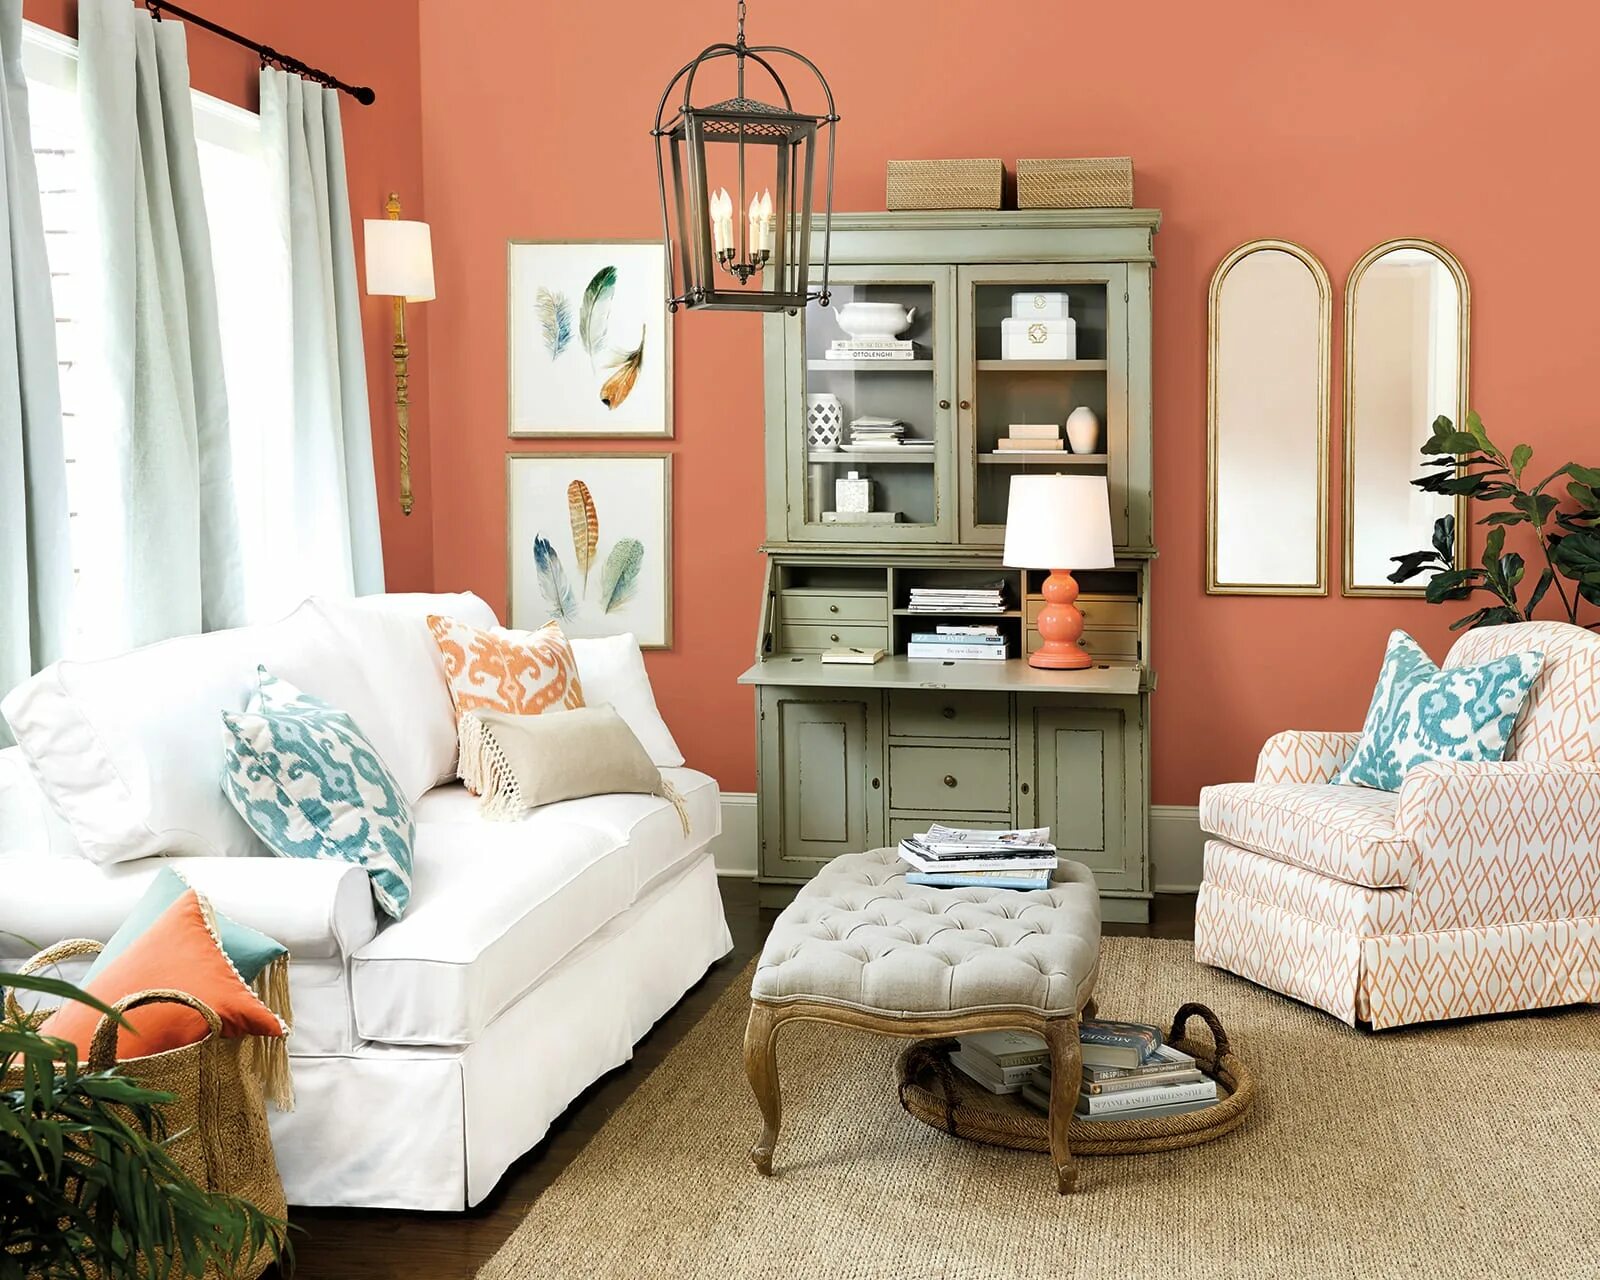 Товарищ месяц комната мебель какое слово. Коралловый цвет в интерьере. Коралловый цвет стен. Коралловая мебель в интерьере. Коралловый цвет в интерьере гостиной.